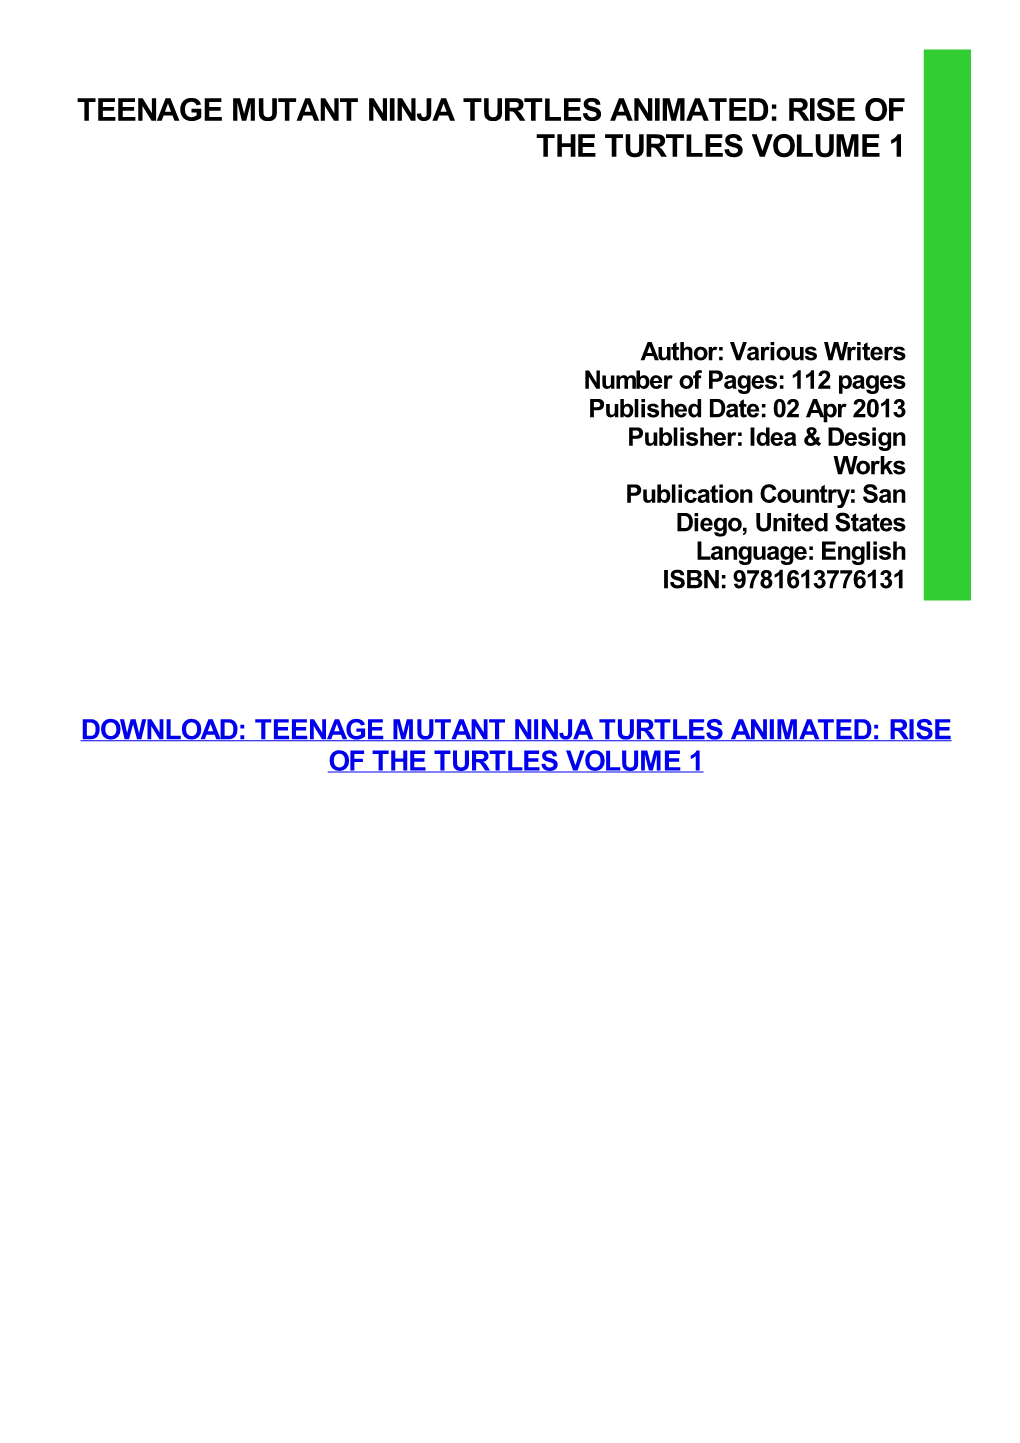 Ebook Download Teenage Mutant Ninja Turtles Animated: Rise of The